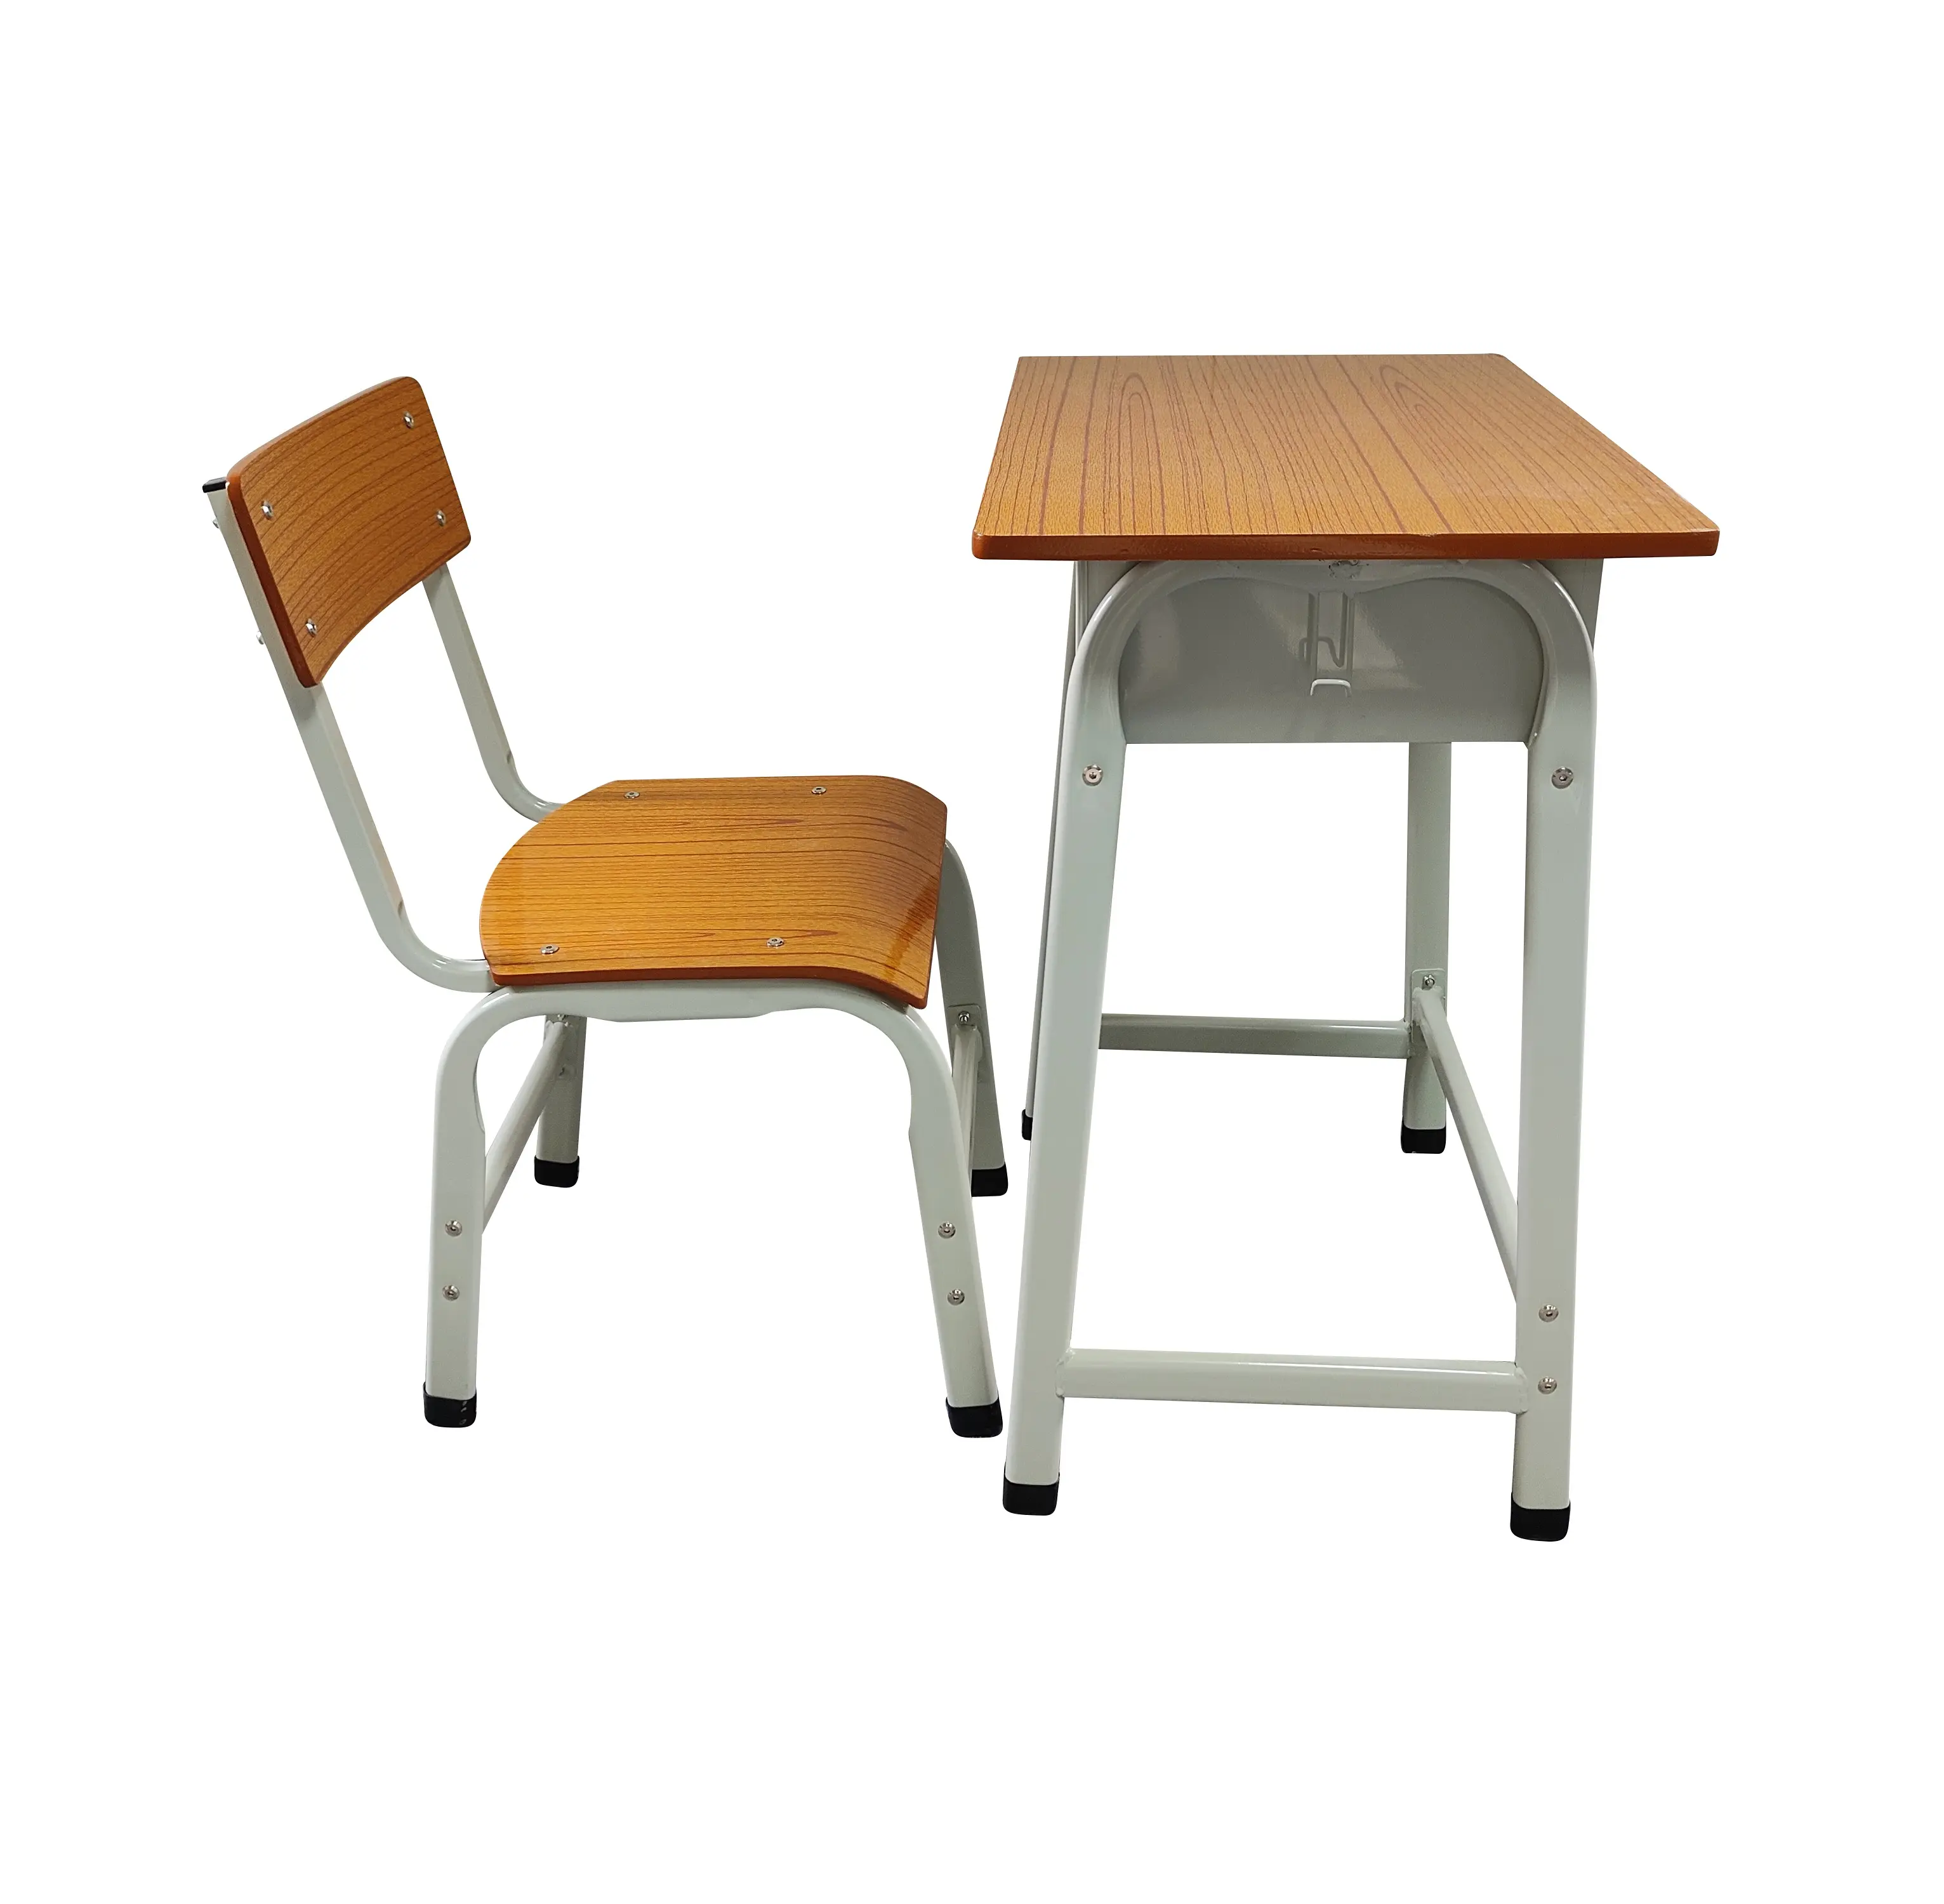 Escritorios y sillas de metal baratos para estudiantes, muebles escolares para el hogar de diseño minimalista, oficina, dormitorio y sala de estar para estudiantes